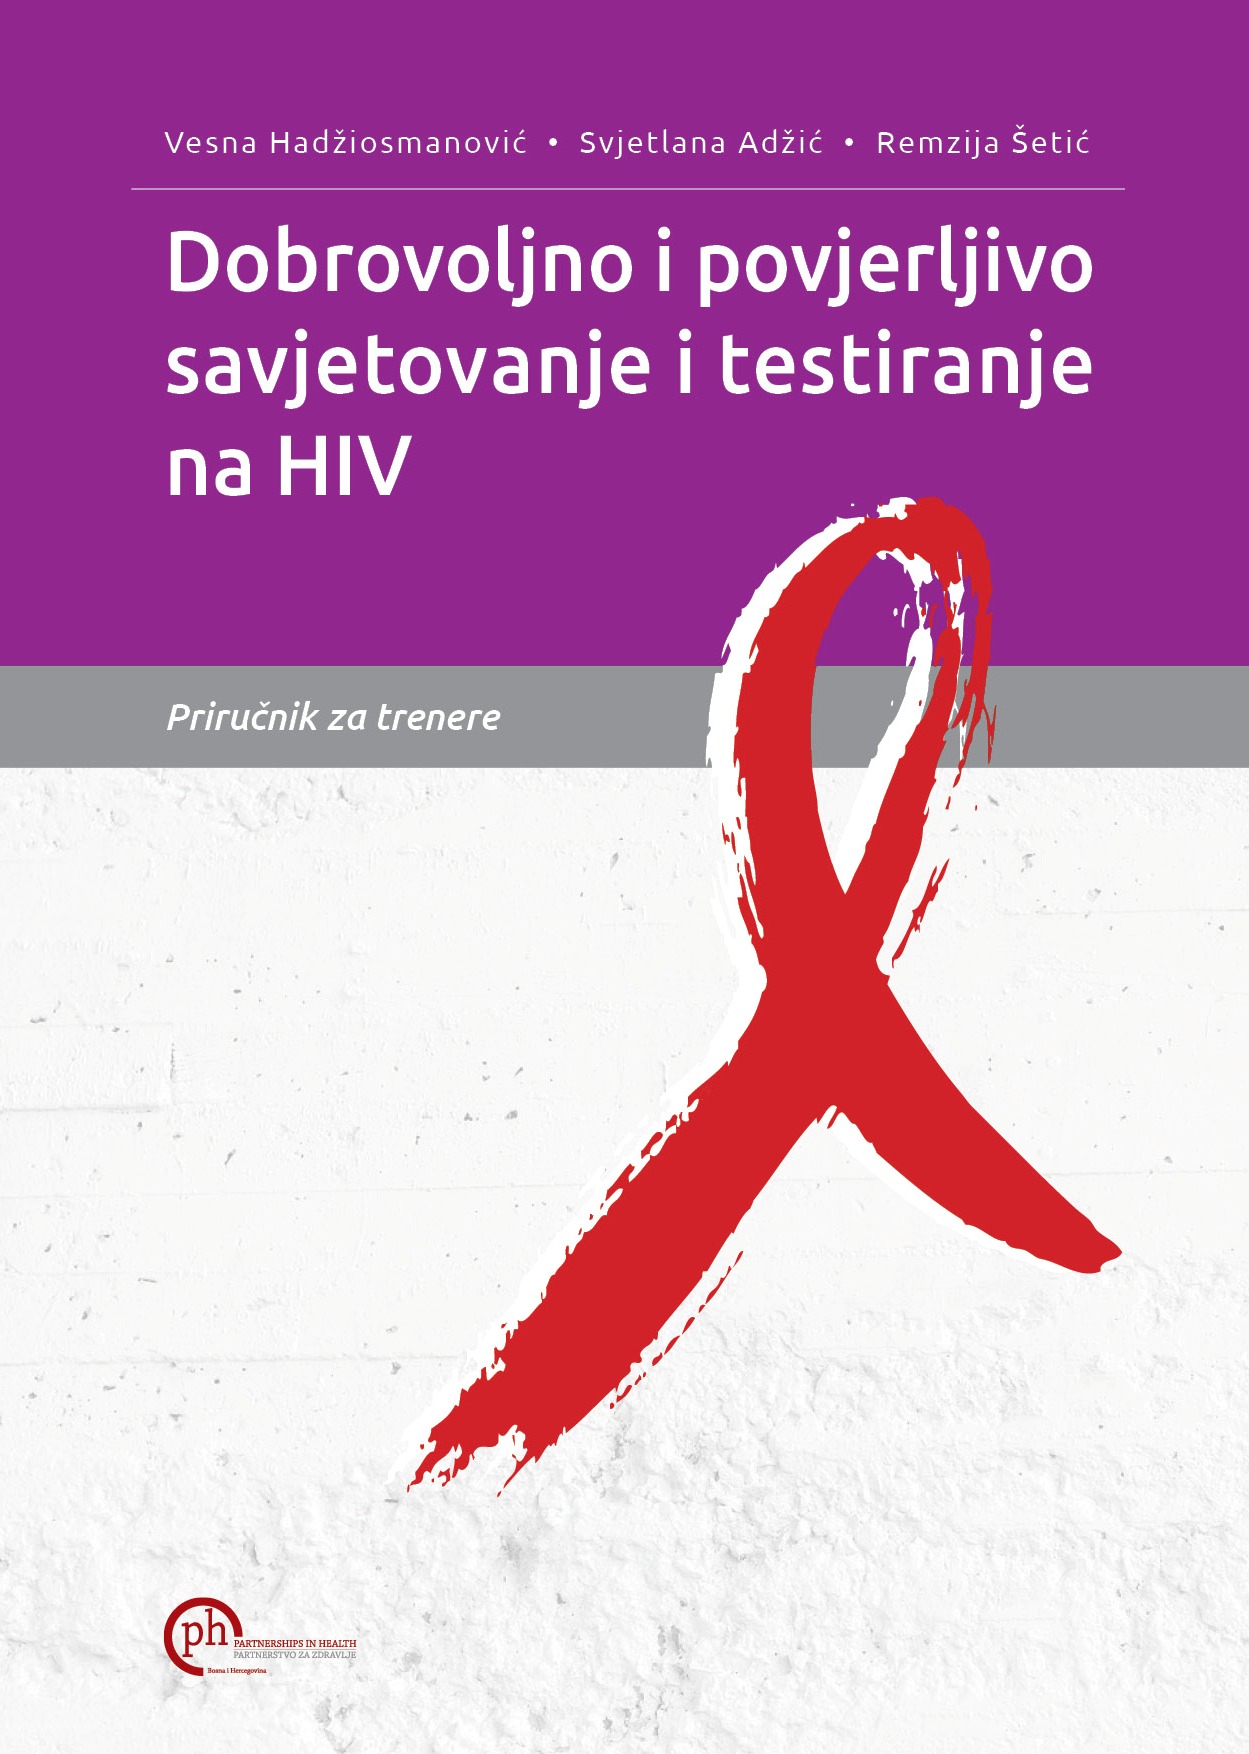 Dobrovoljno i povjerljivo savjetovanje i testiranje na HIV - Priručnik za trenere